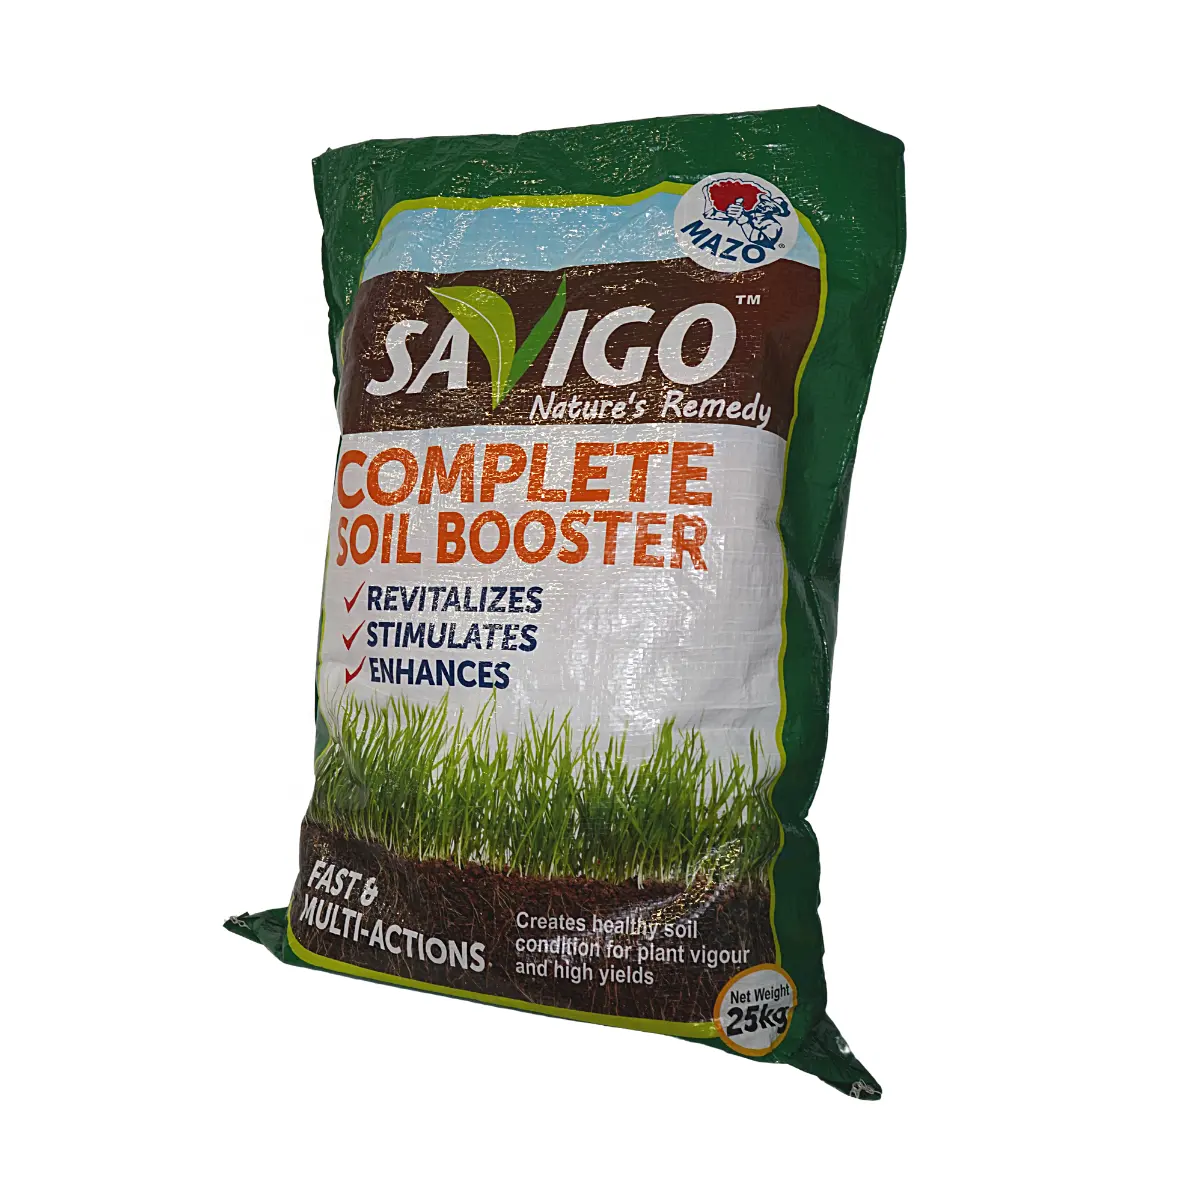 土壌処理SAVIGO作物の健康に最適な栄養素ココナッツ肥料